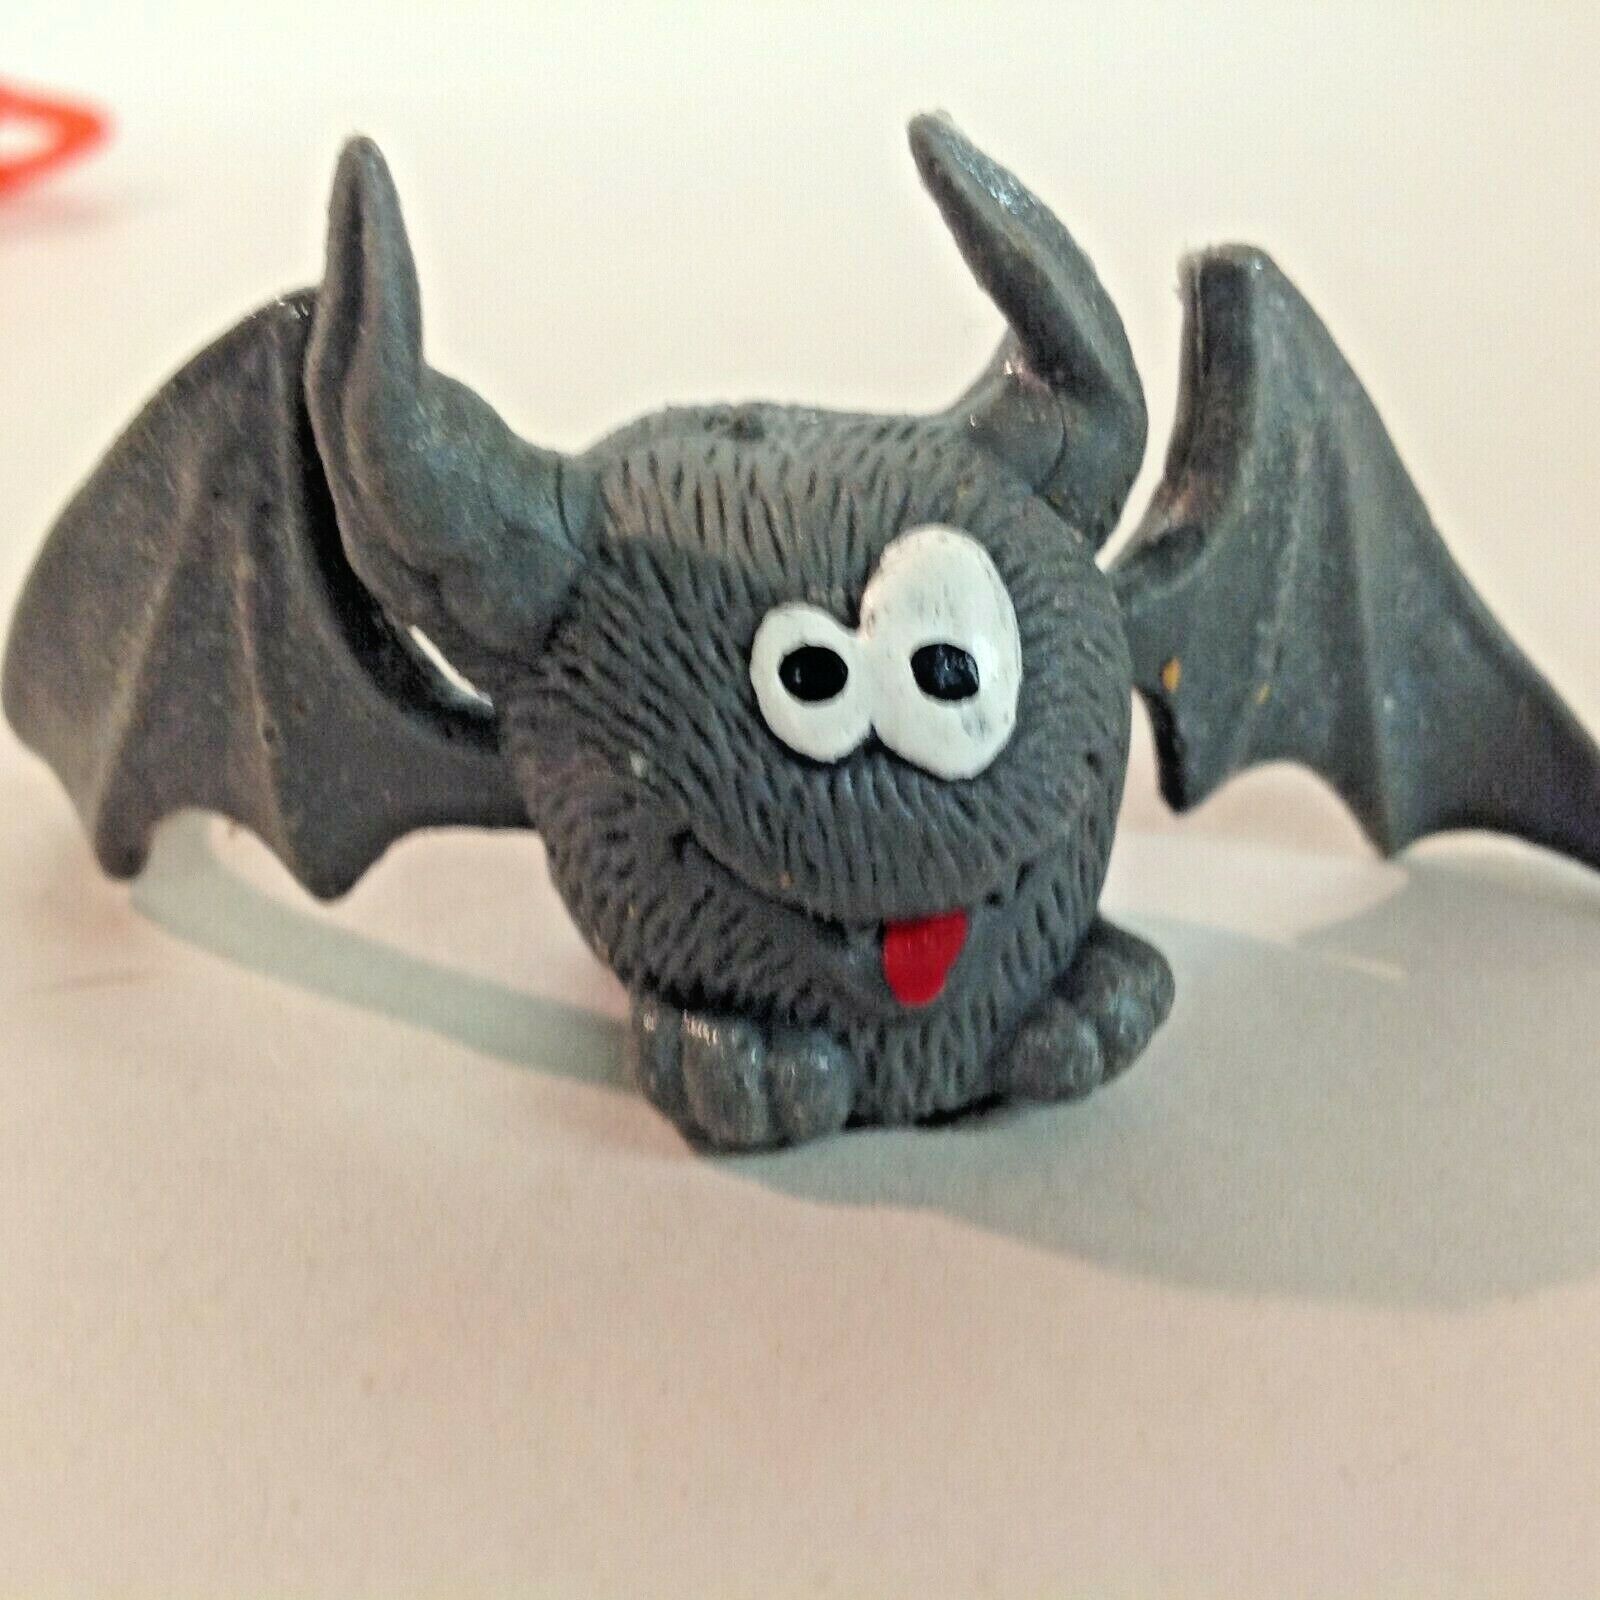 Vintage Lot of 2 Jiggler Monster Finger Puppets Halloween Bat Jack O'Lantern  Unbranded Does Not Apply - фотография #10